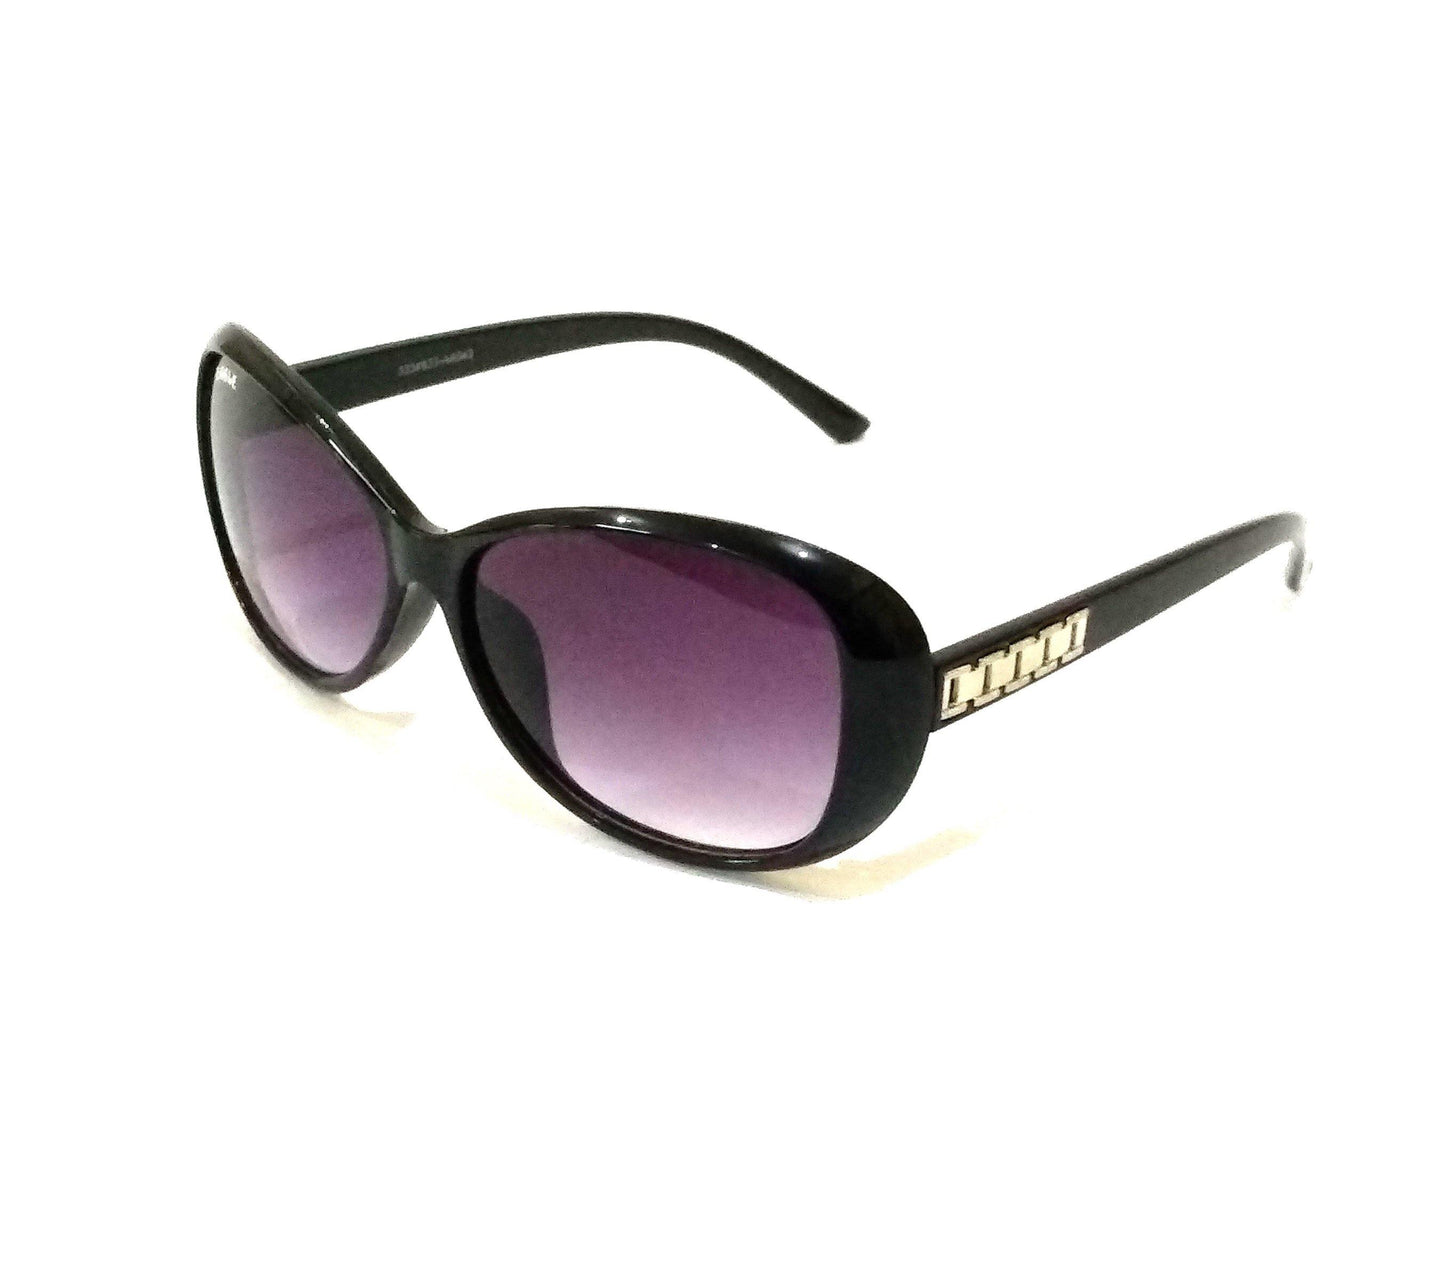 Buy Black Sunglasses for Women EA7554BK - Glasses India Online in India